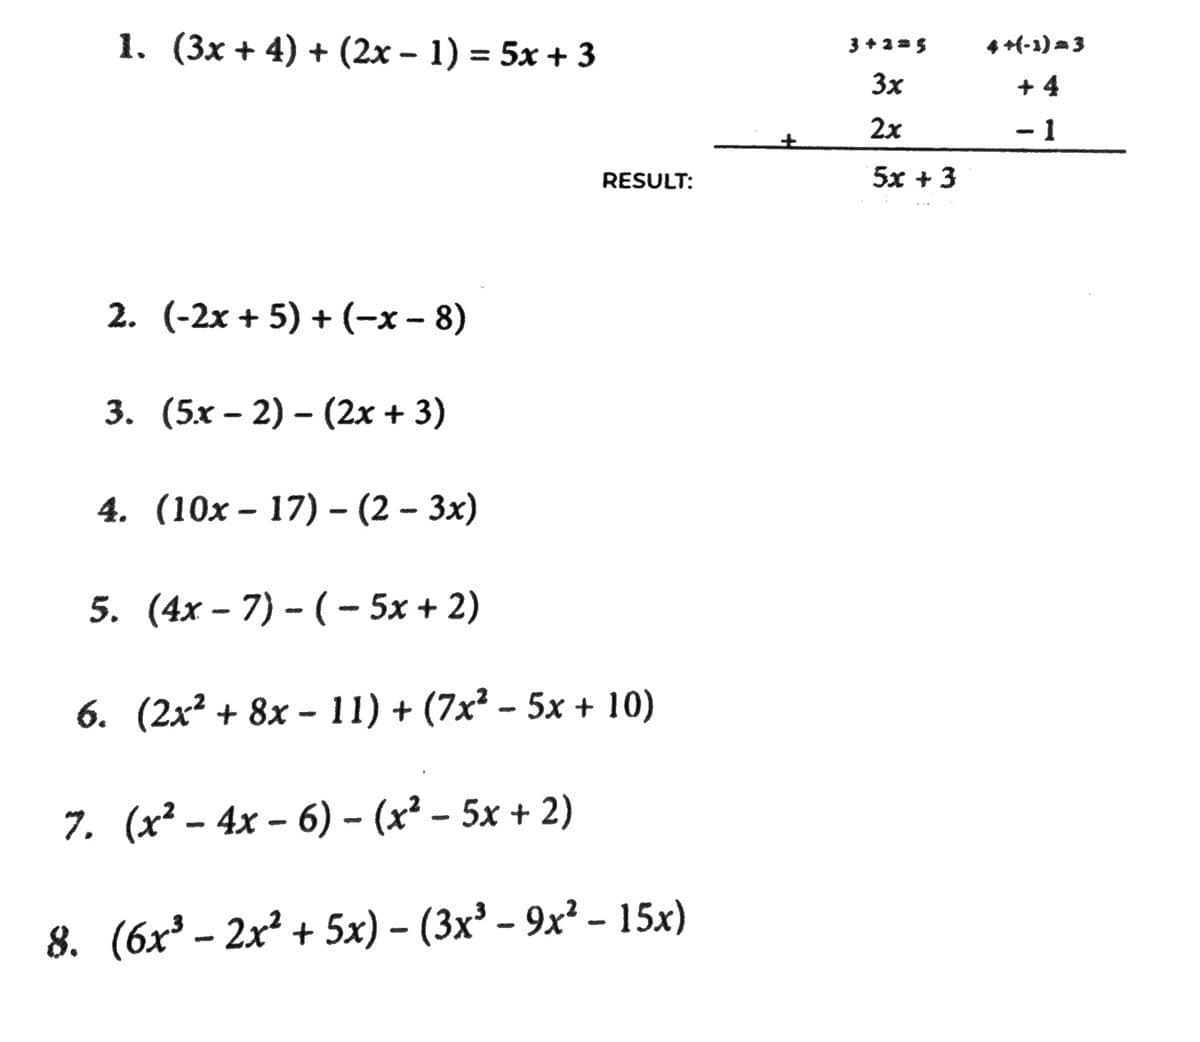 1. (3x + 4) + (2x − 1) = 5x + 3
2. (-2x + 5) + (-x-8)
3. (5x-2)(2x + 3)
4. (10x17) - (2-3x)
RESULT:
5. (4x-7) - ( − 5x + 2)
6. (2x² + 8x - 11) + (7x² − 5x + 10)
-
7. (x² - 4x-6) - (x² - 5x + 2)
8. (6x³ - 2x² + 5x) - (3x³ - 9x² - 15x)
3+2=5
3x
2x
52+3
4+(-1)=3
+4
- 1
-